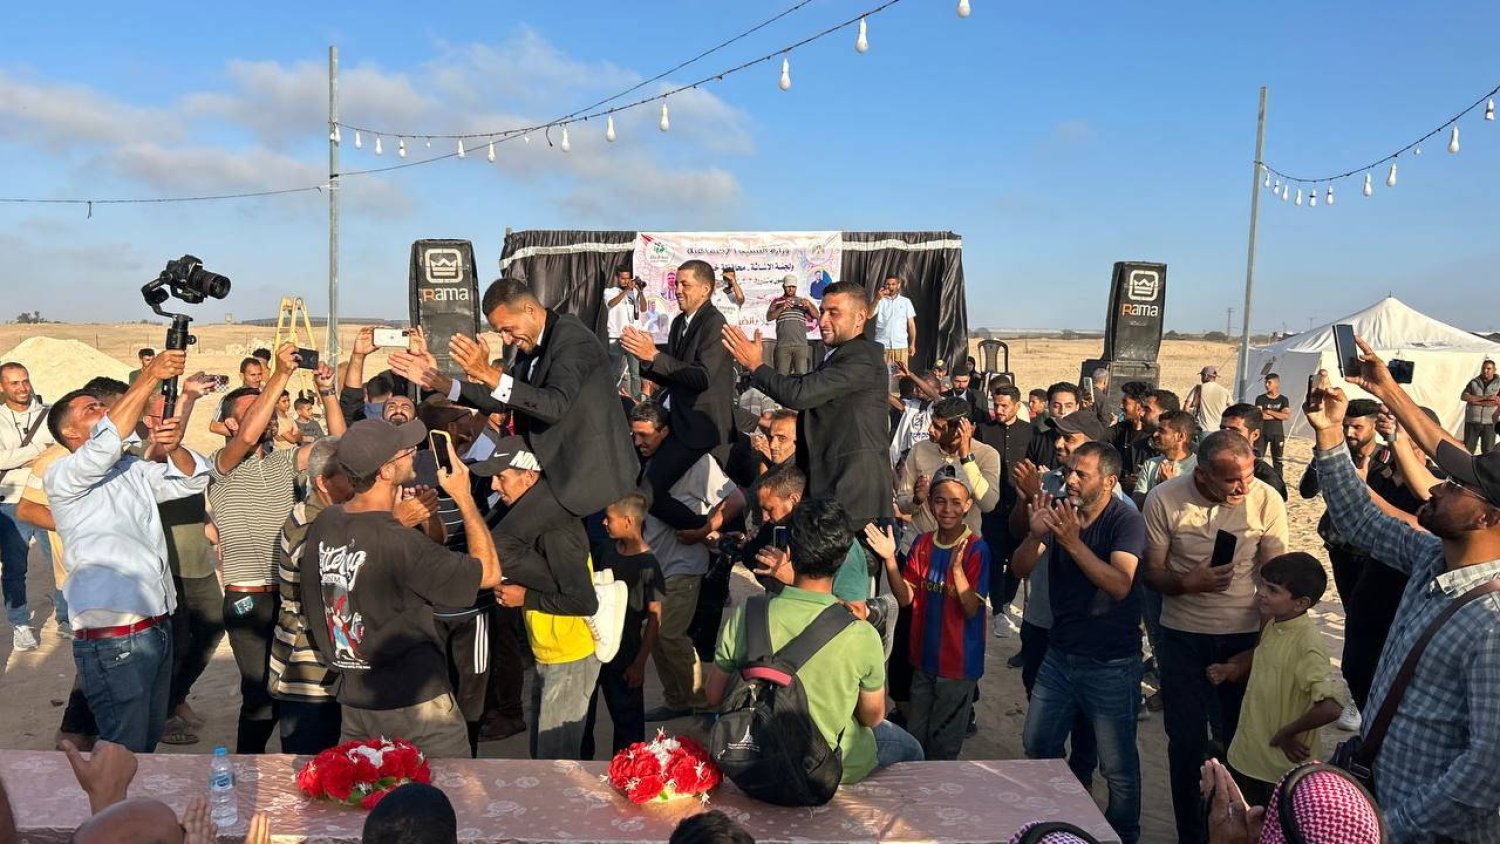 تعلو الابتسامات وجوه العرسان وهم يصفقون بأياديهم تارة ويتمايلون بهدوء وخجل شديدين تارة أخرى (وكالة أنباء العالم العربي)